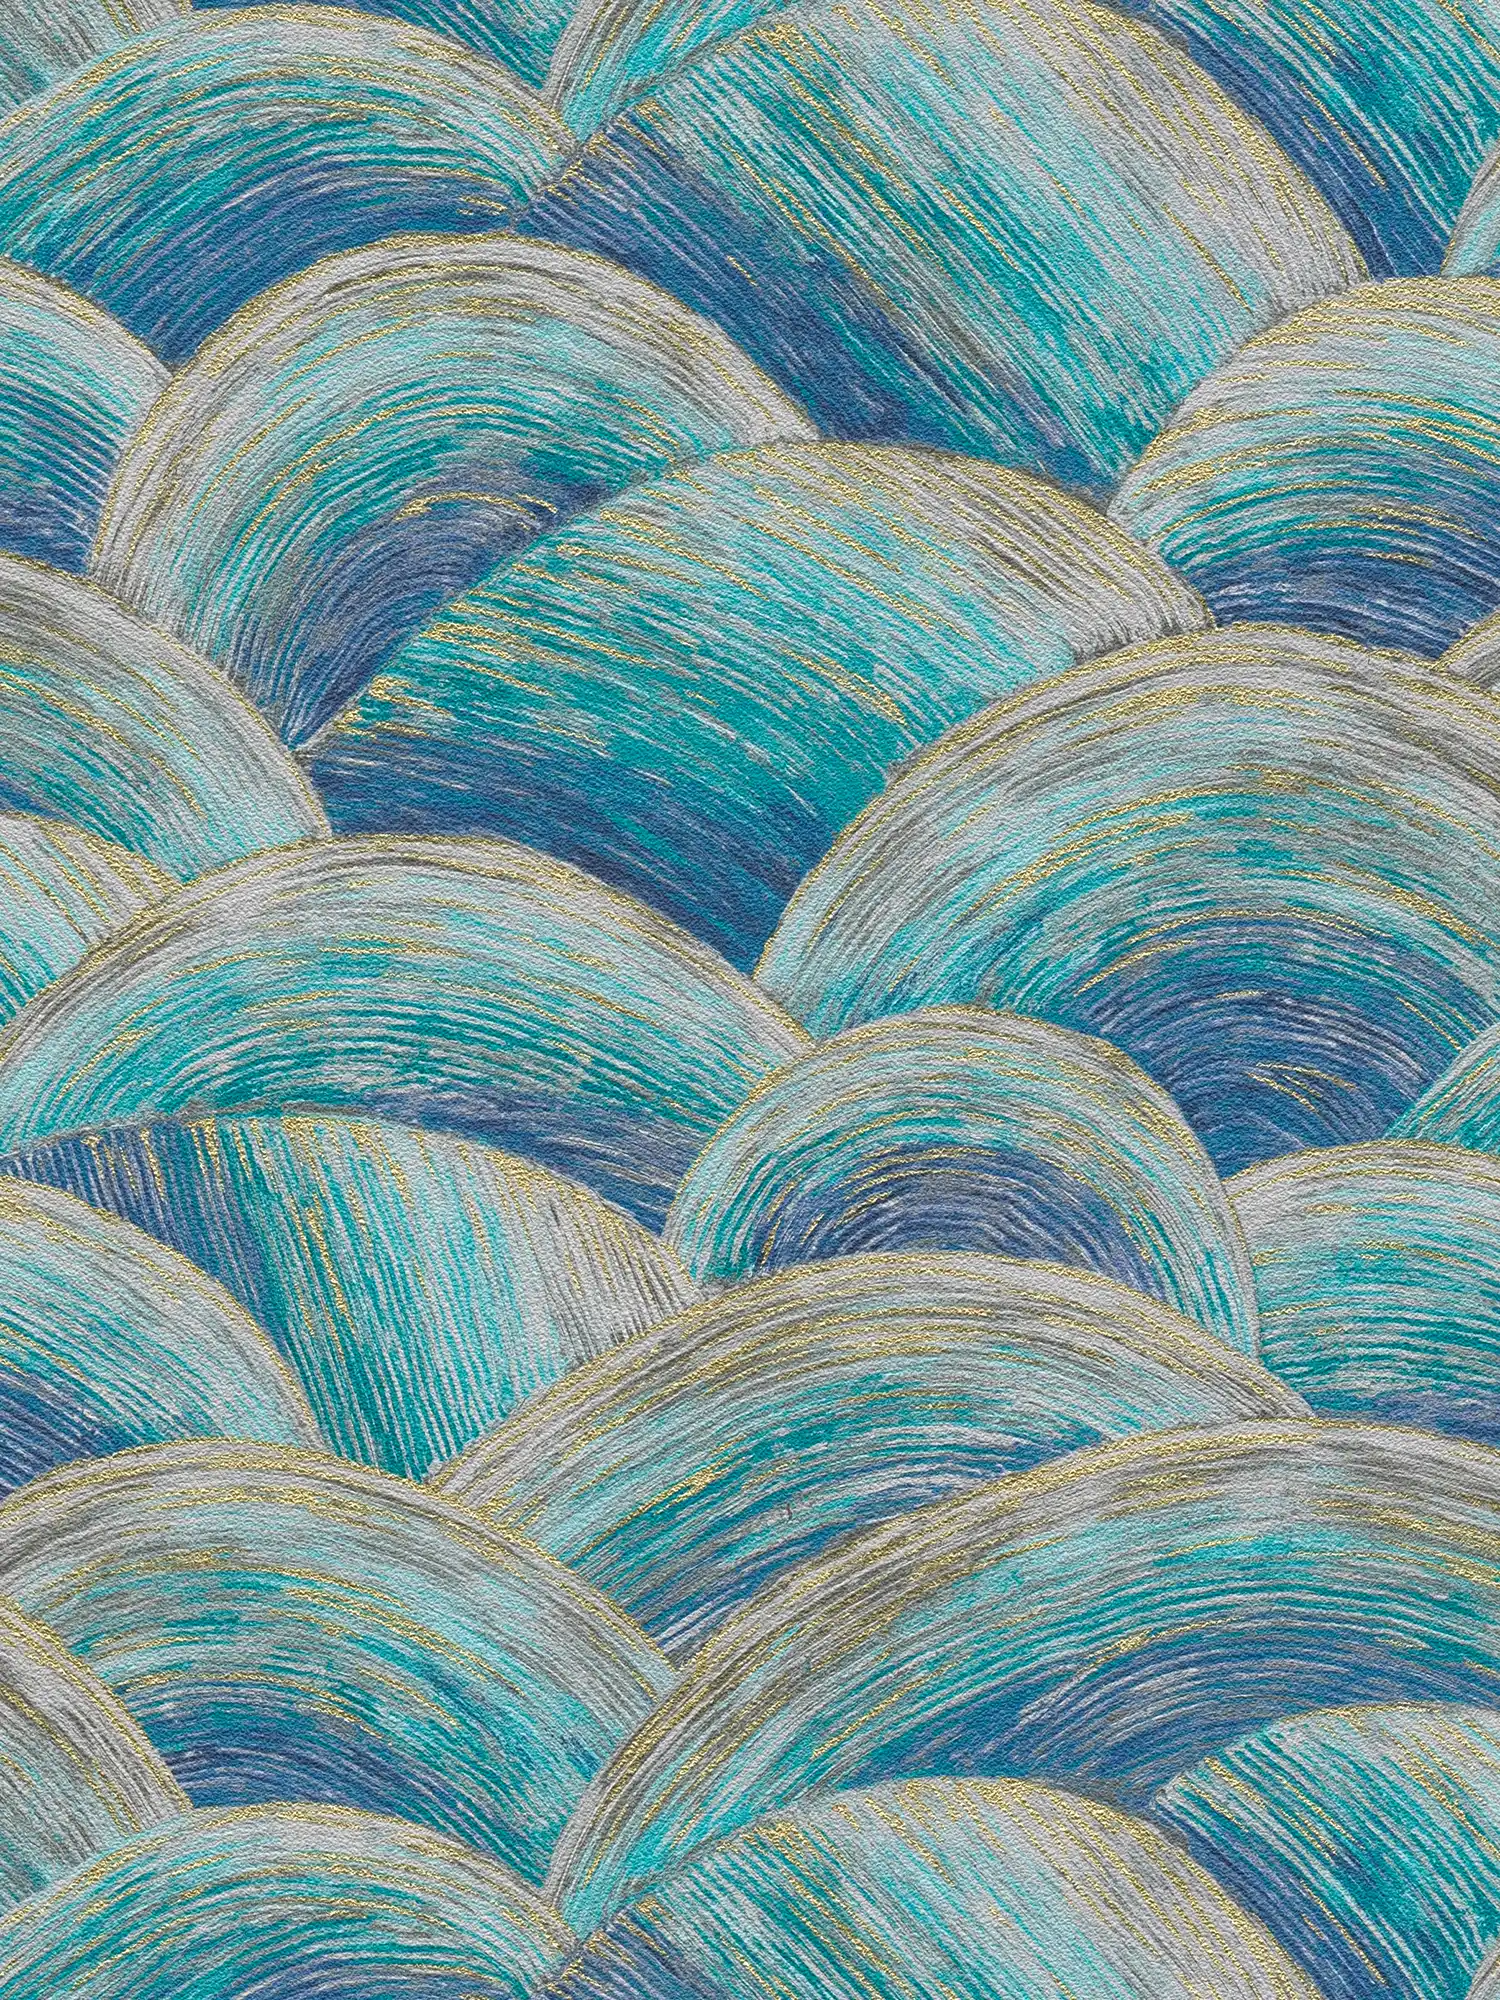 Abstrakte Vliestapete mit Wellenmuster & Glanzeffekt – Blau, Türkis, Gold
